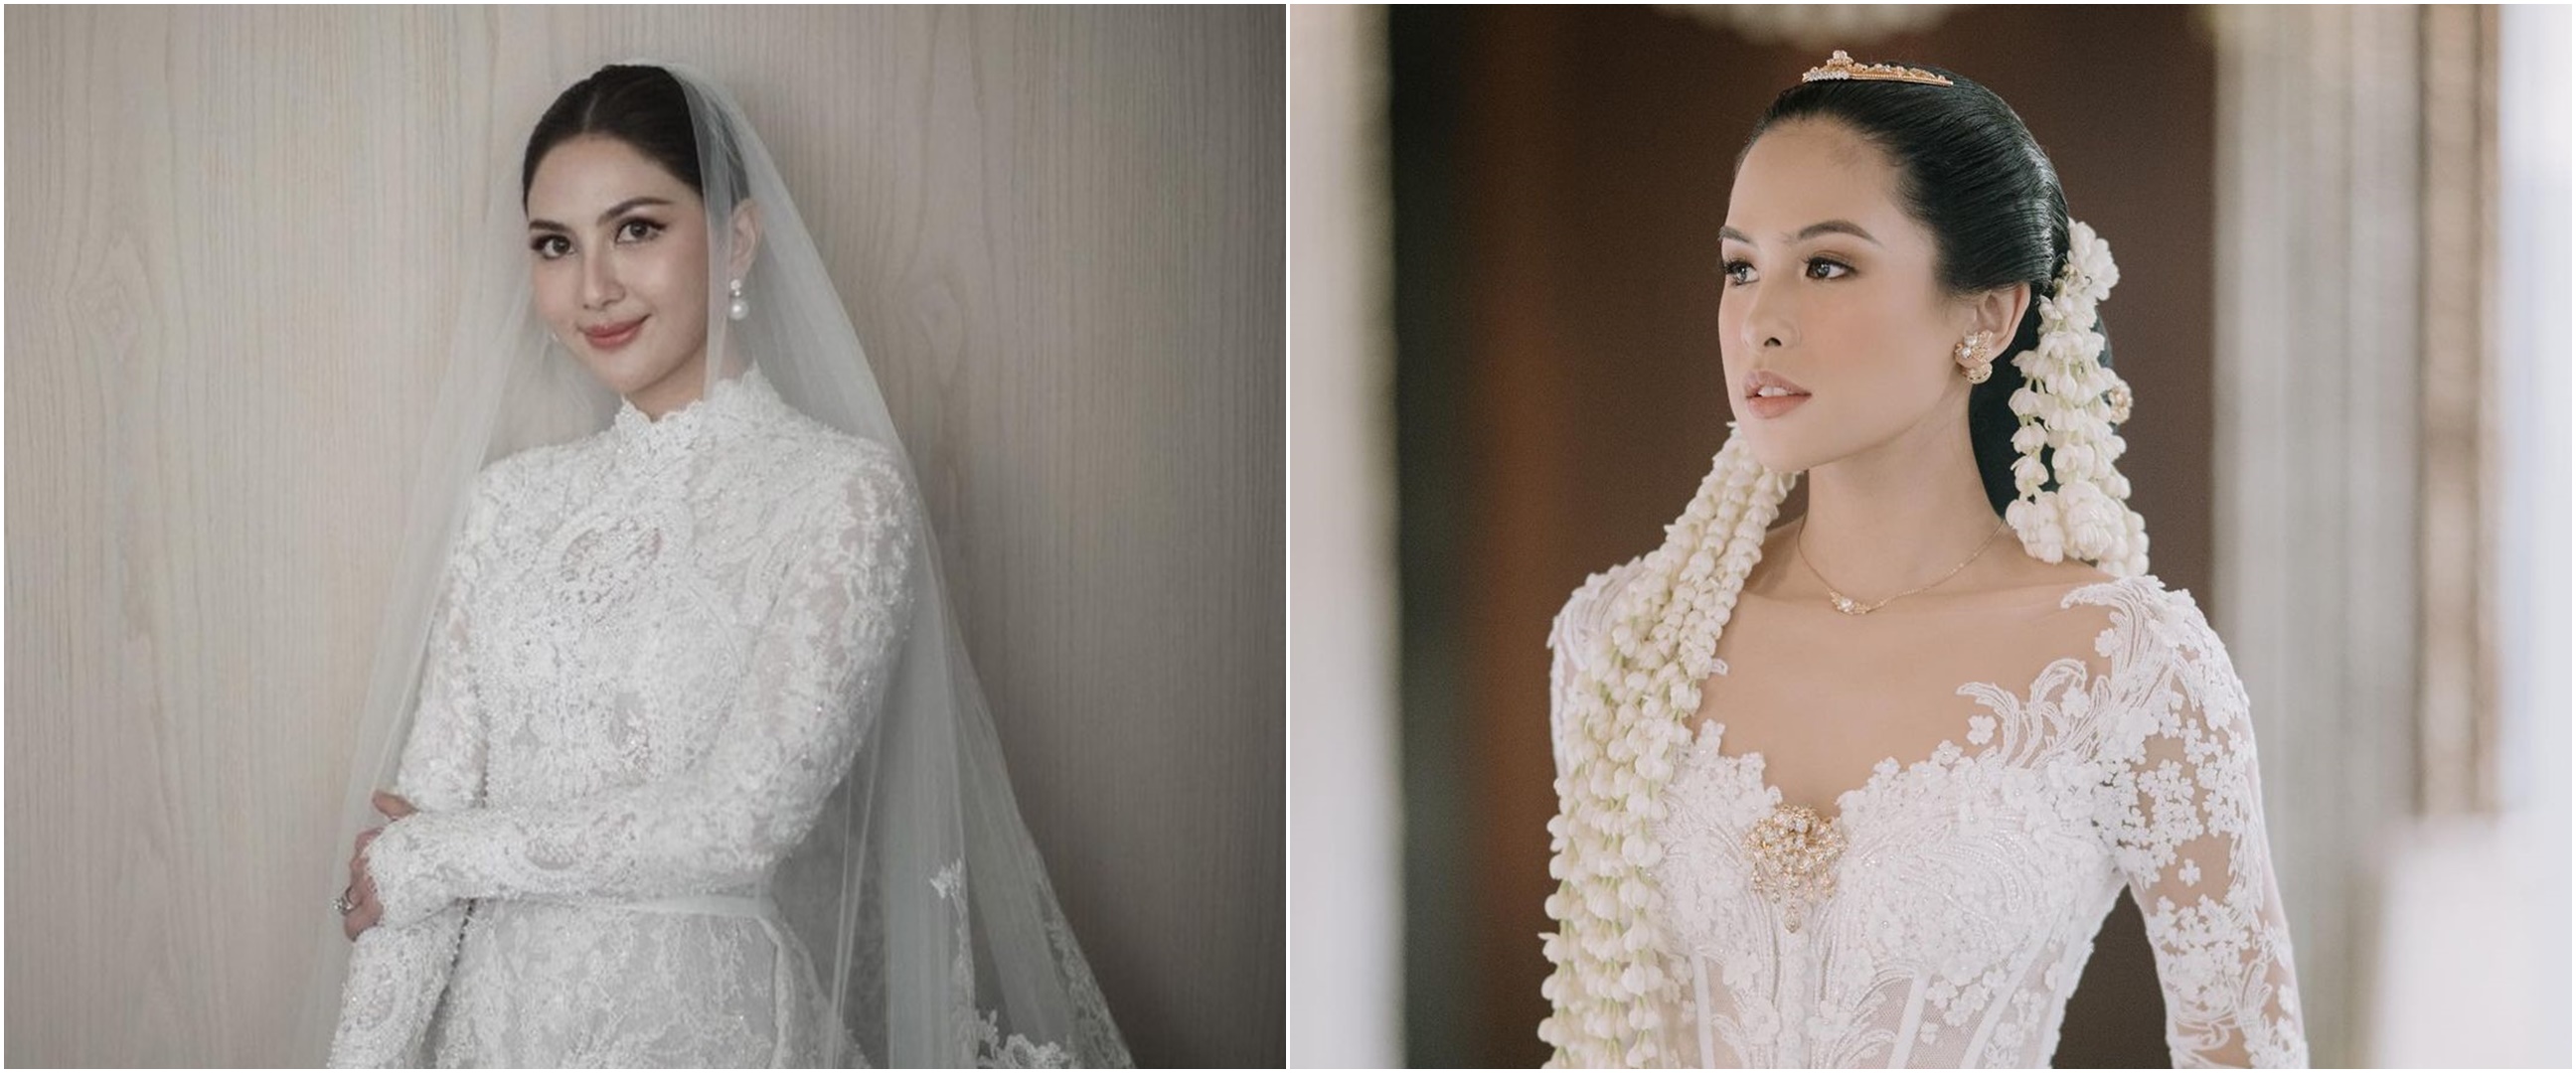 Gaya 11 seleb bareng bridesmaid di pernikahan, Jessica Mila tampil memukau bak princess